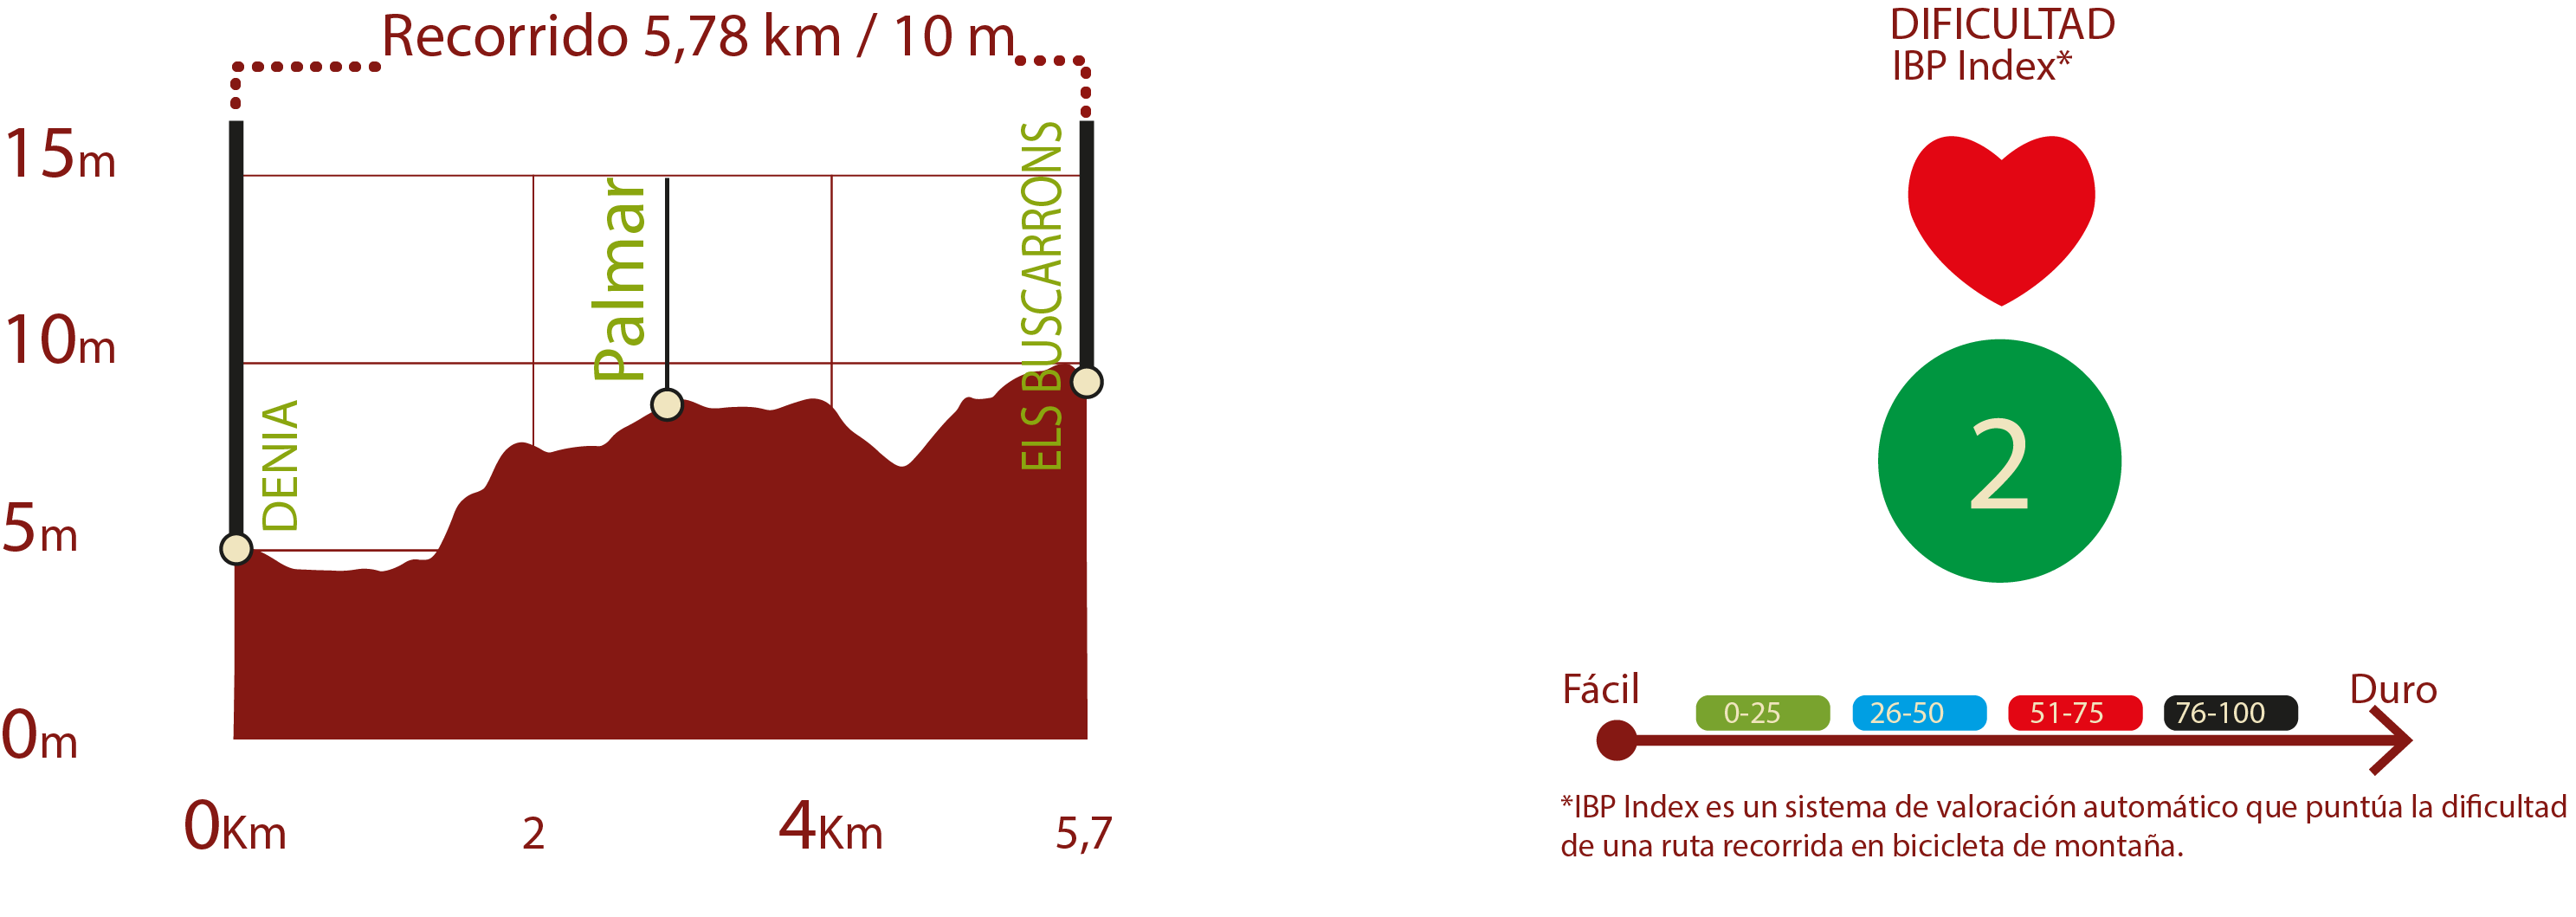 Perfil e IBP
Perfil del recorrido del CN de Dénia: 5,78 km / desnivel de subida 10 m
IBP 2: Fácil

